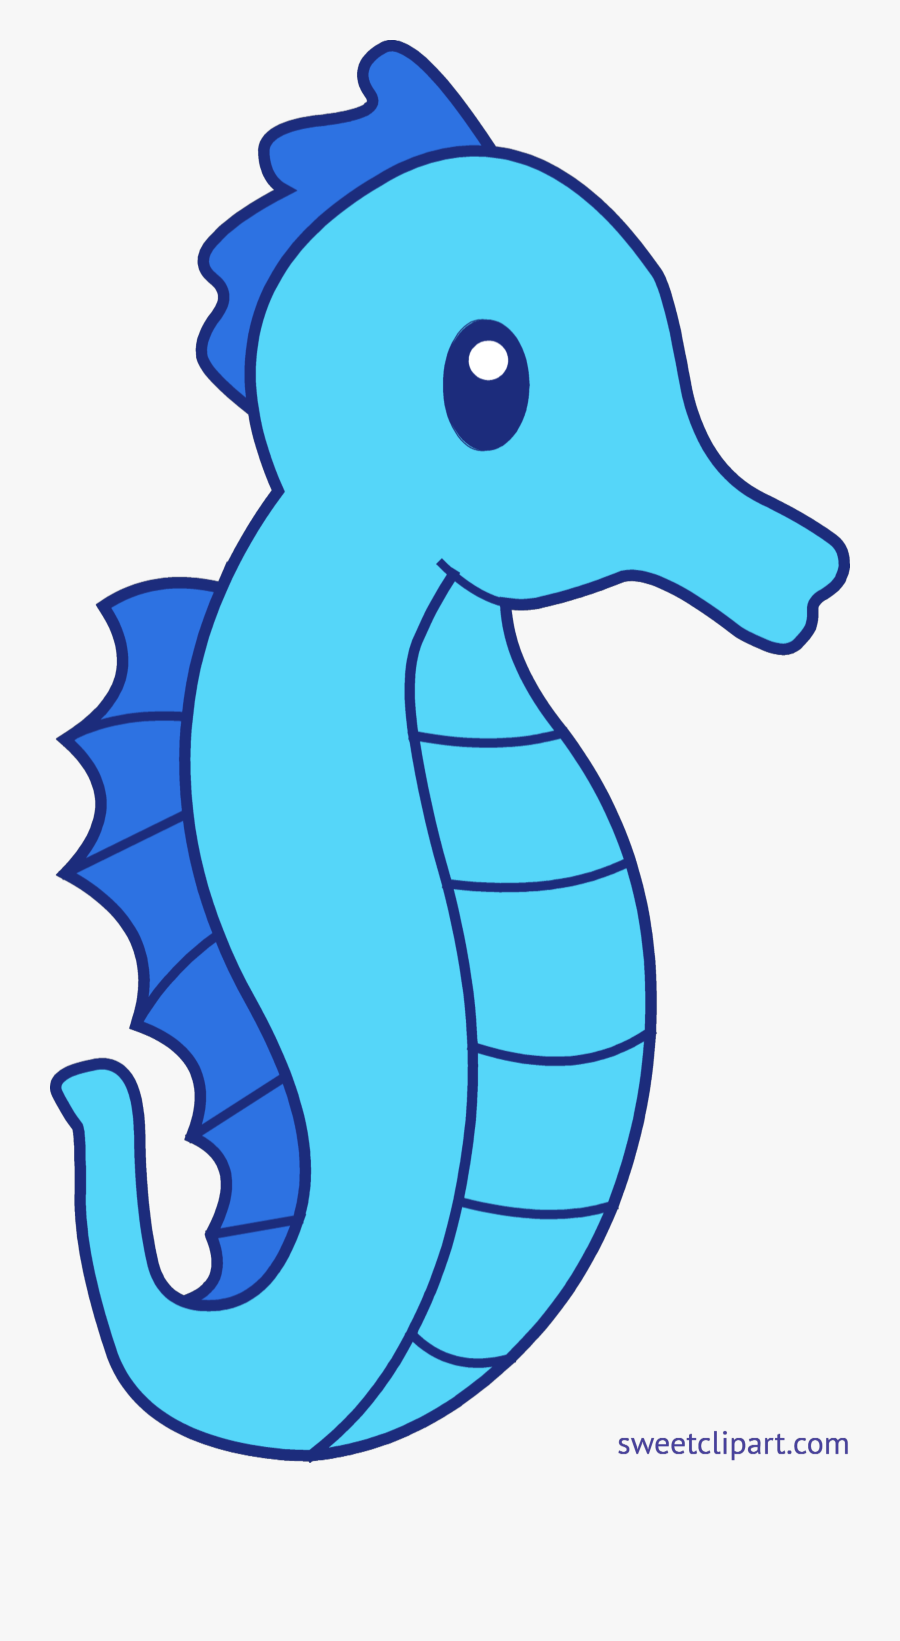 Image Blue Clip Art Sweet - Clipart Seahorse, Transparent Clipart